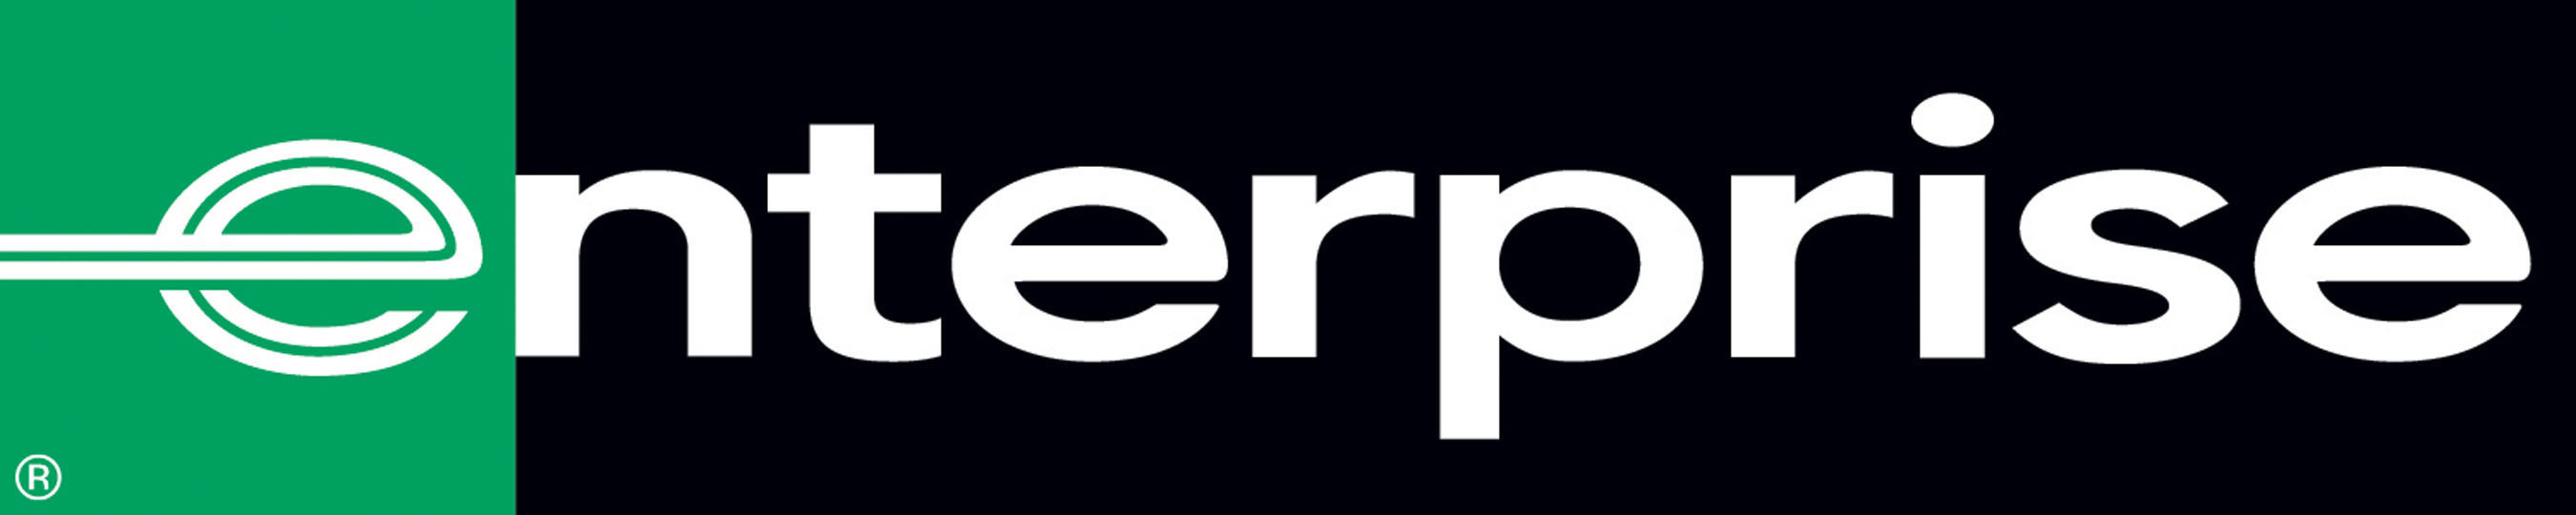 Enterprise Rent-A-Car Logo. (PRNewsFoto/Enterprise Holdings) (PRNewsFoto/ENTERPRISE HOLDINGS)